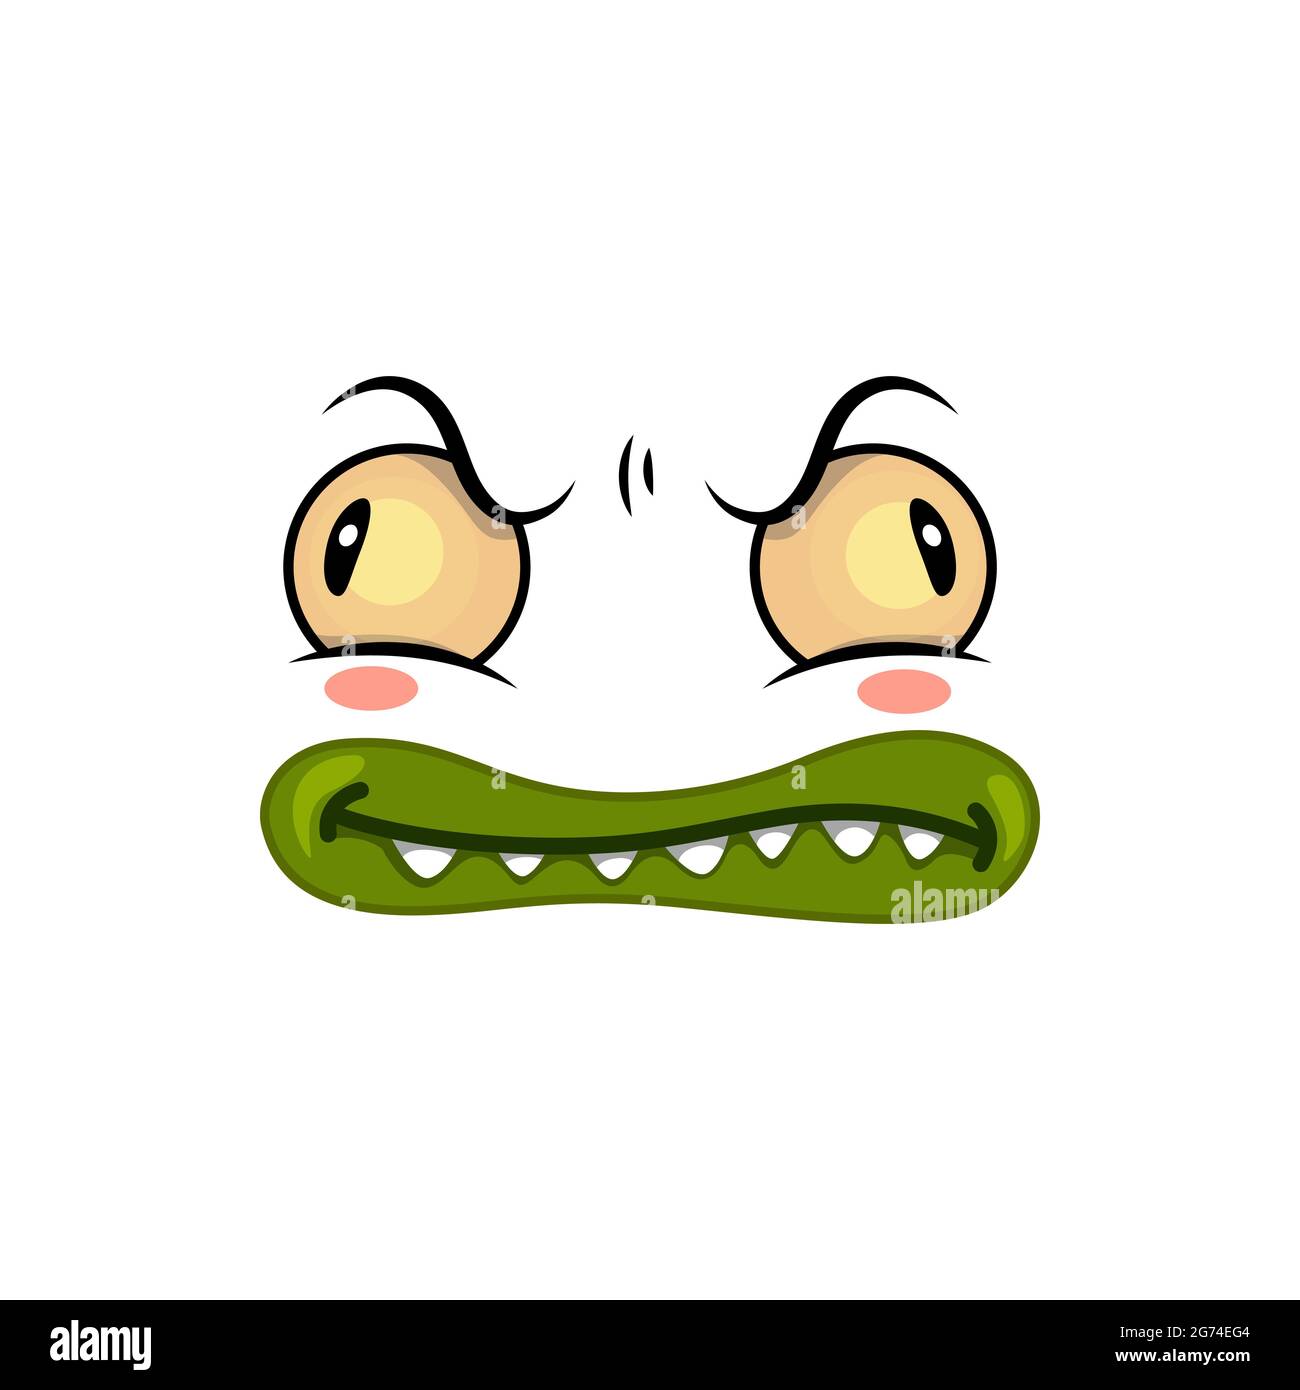 Monster Face Cartoon Vektor-Symbol, lustige Halloween-Emotion mit gruseligen schrägen Augen und toothy Mund mit grünen Lippen. Ghost, Alien oder Hölle Geschöpf em Stock Vektor